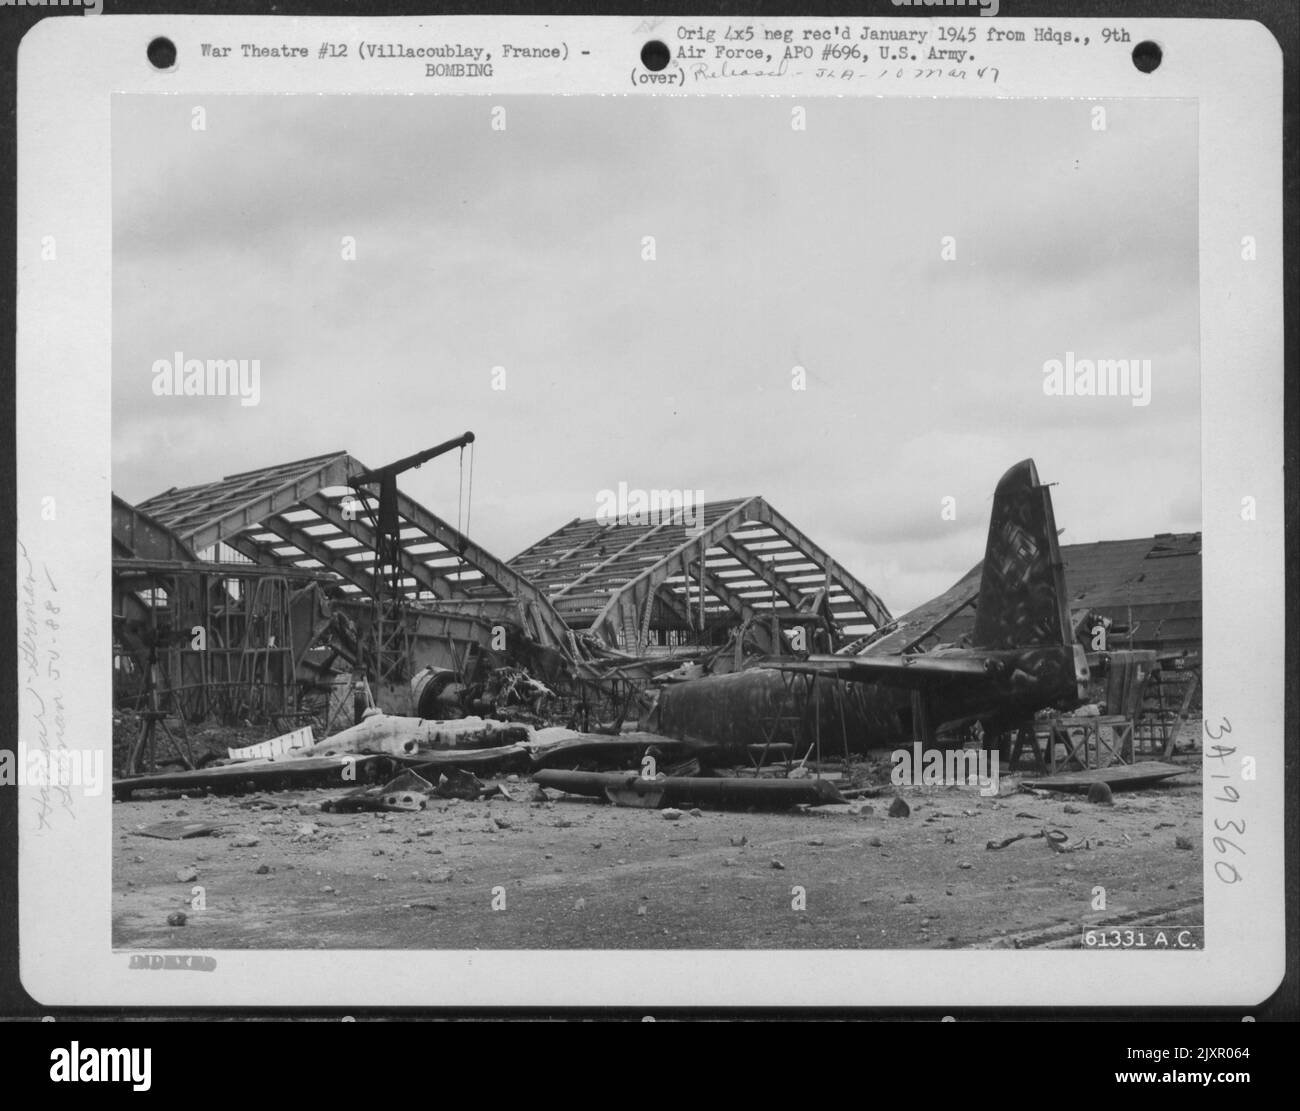 Questo aereo tedesco Ju 88 era in procinto di essere riprogettato quando le bombe americane caddero nell'Airdrome and Repair Depot vicino Villacoublay, Francia. Prendere nota del paranco a catena sospeso dal braccio e del nuovo motore che era pronto per l'installazione. 1 se Foto Stock